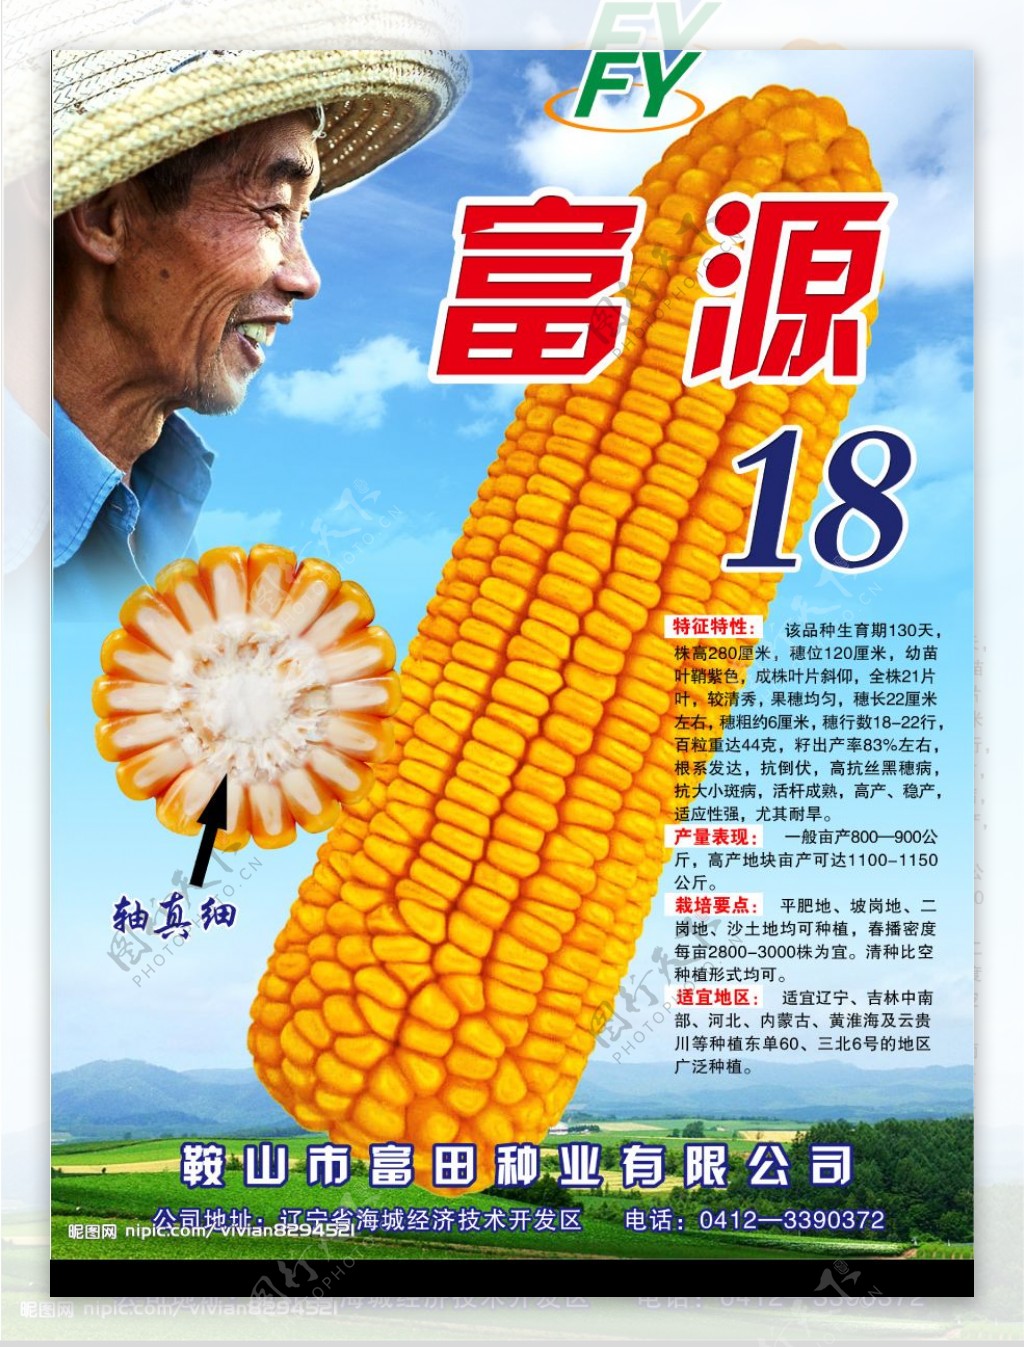 玉米包装设计图片